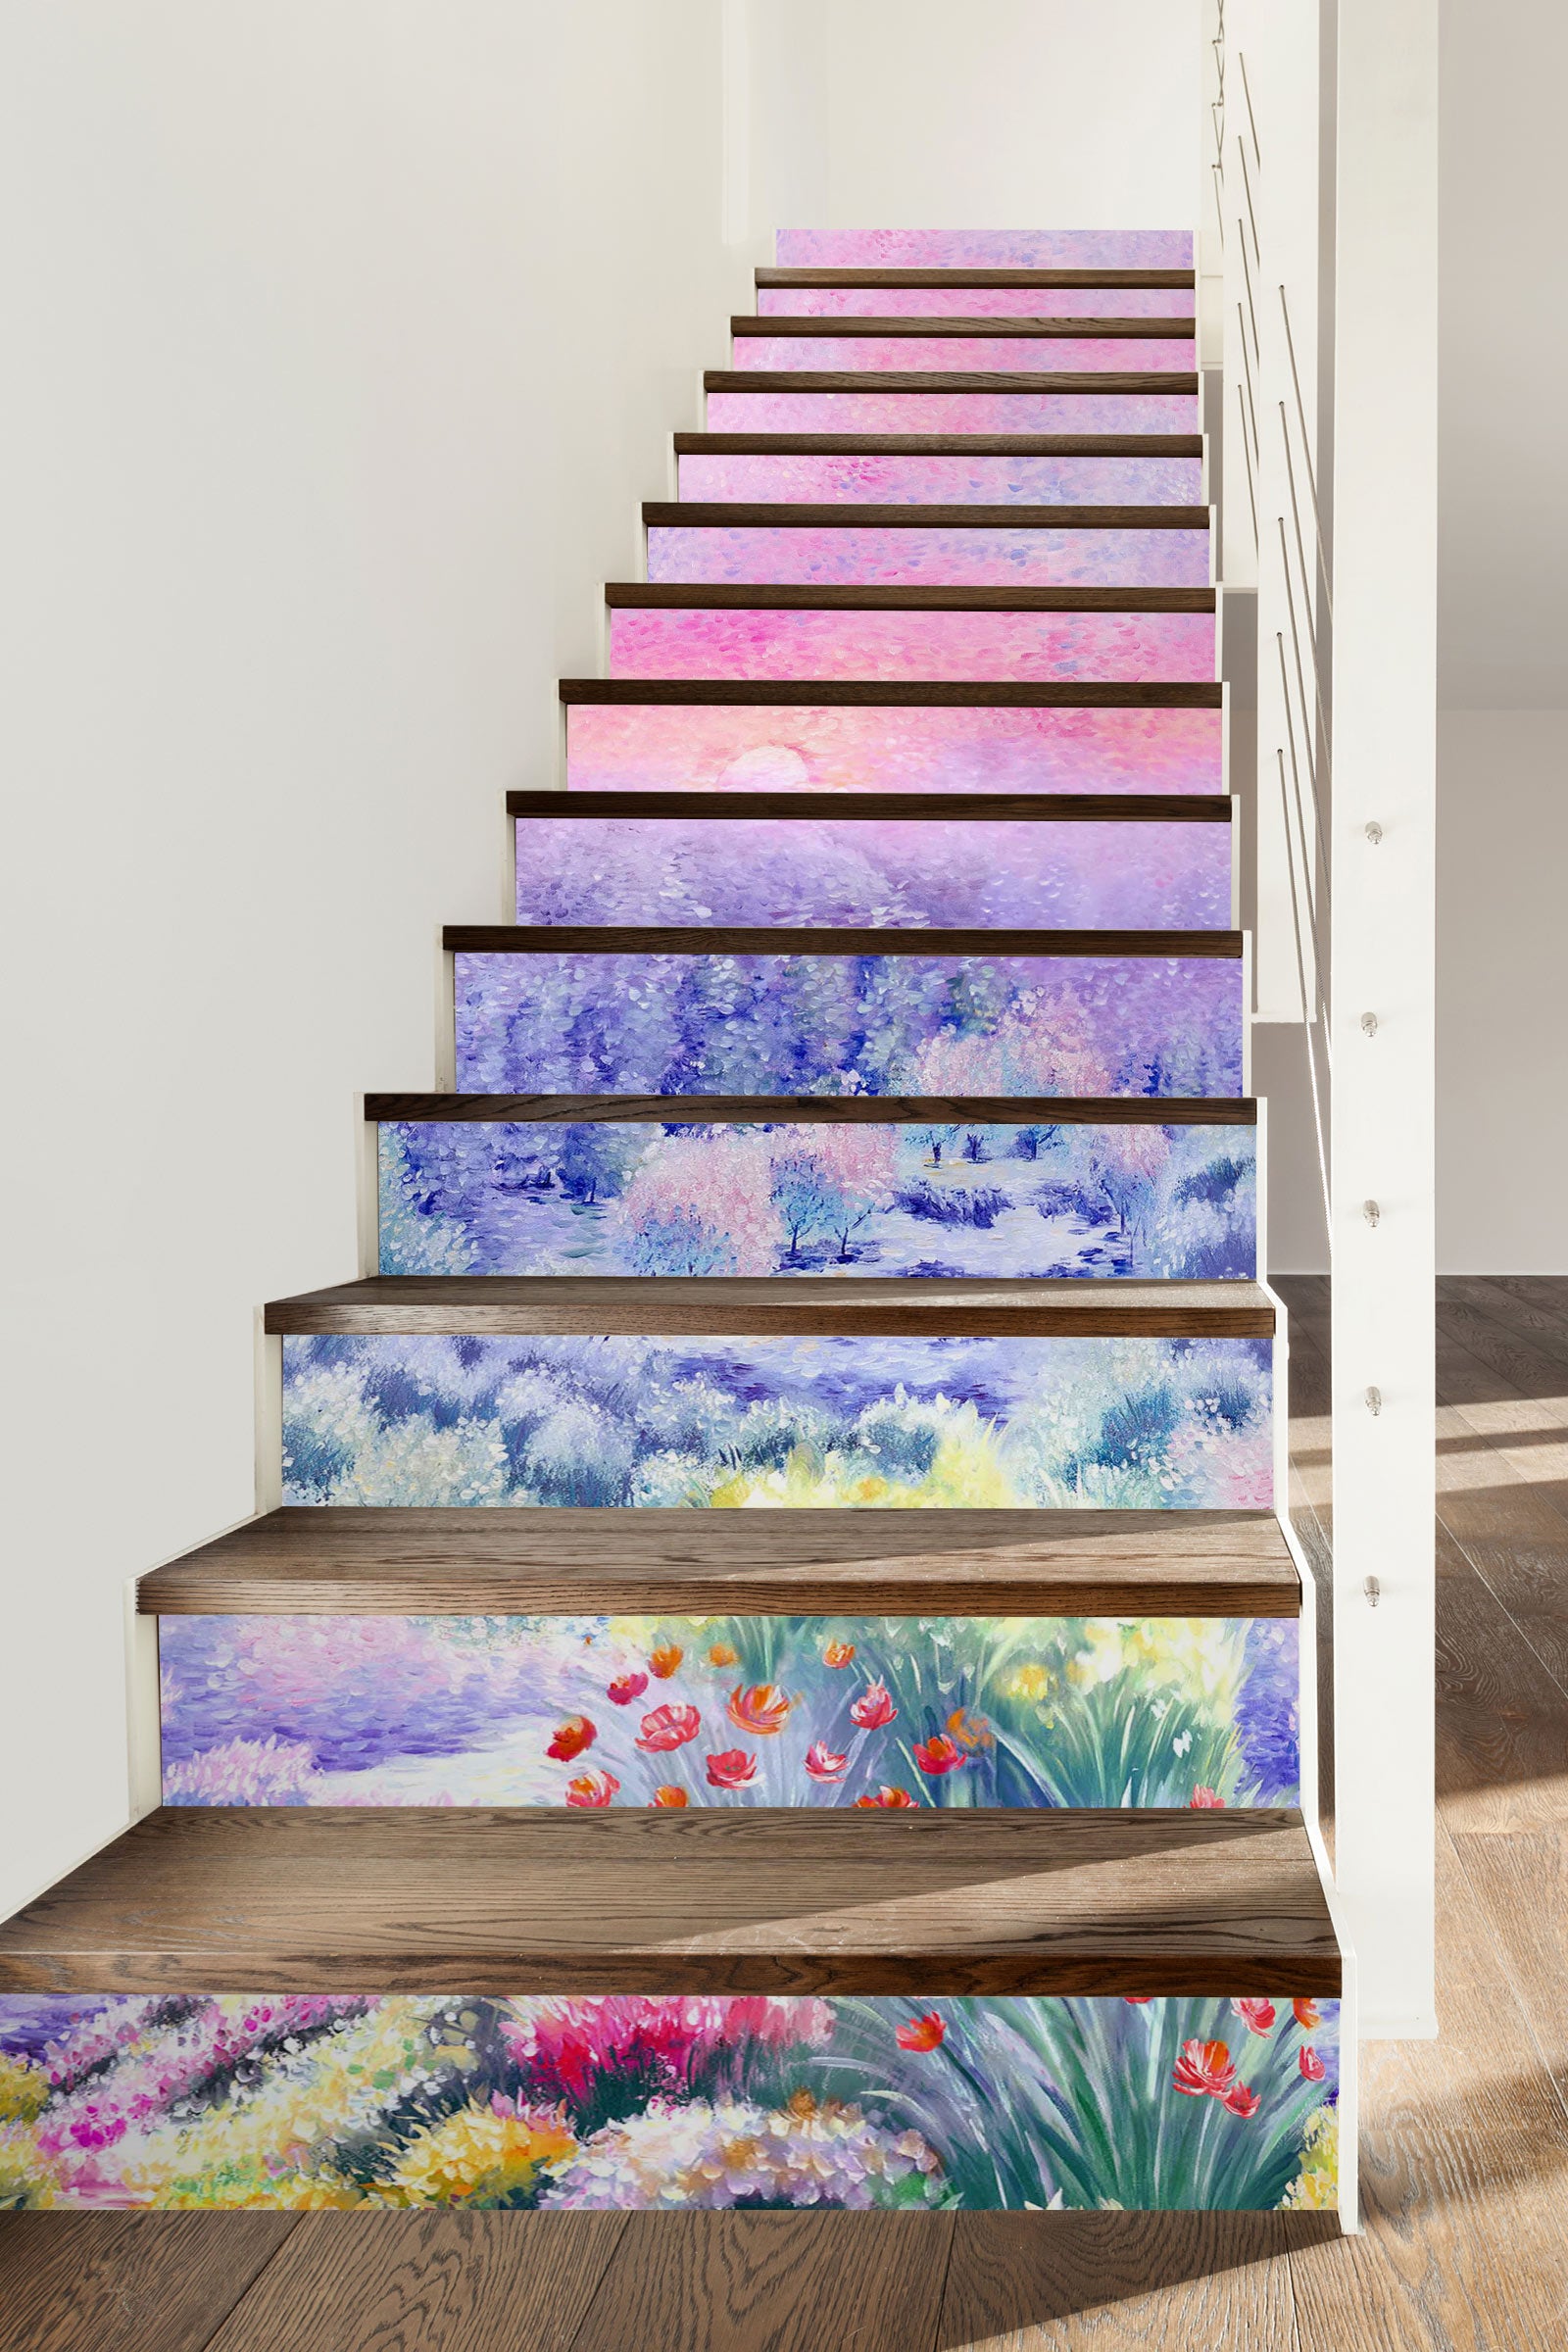 3D Fairy Tale Dream World 475 Stair Risers